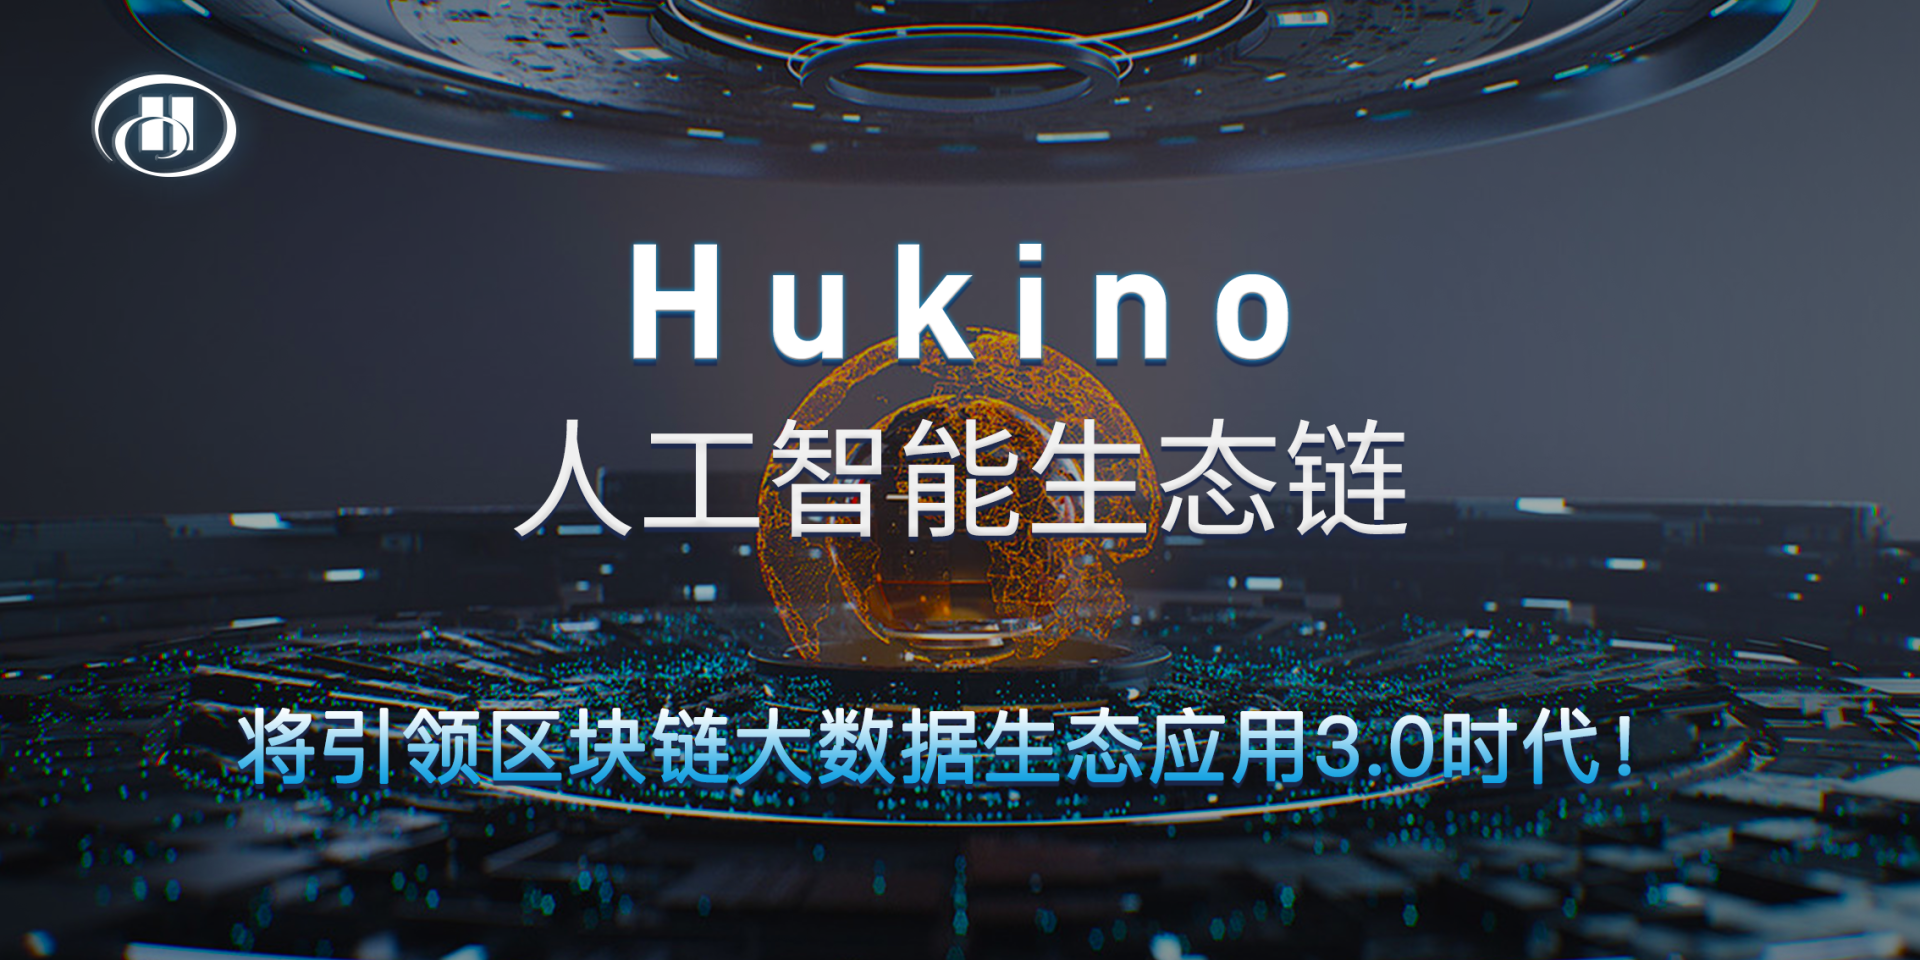 万物共享Hukino生态链诞生 区块链+人工智能打造颠覆性创新风口